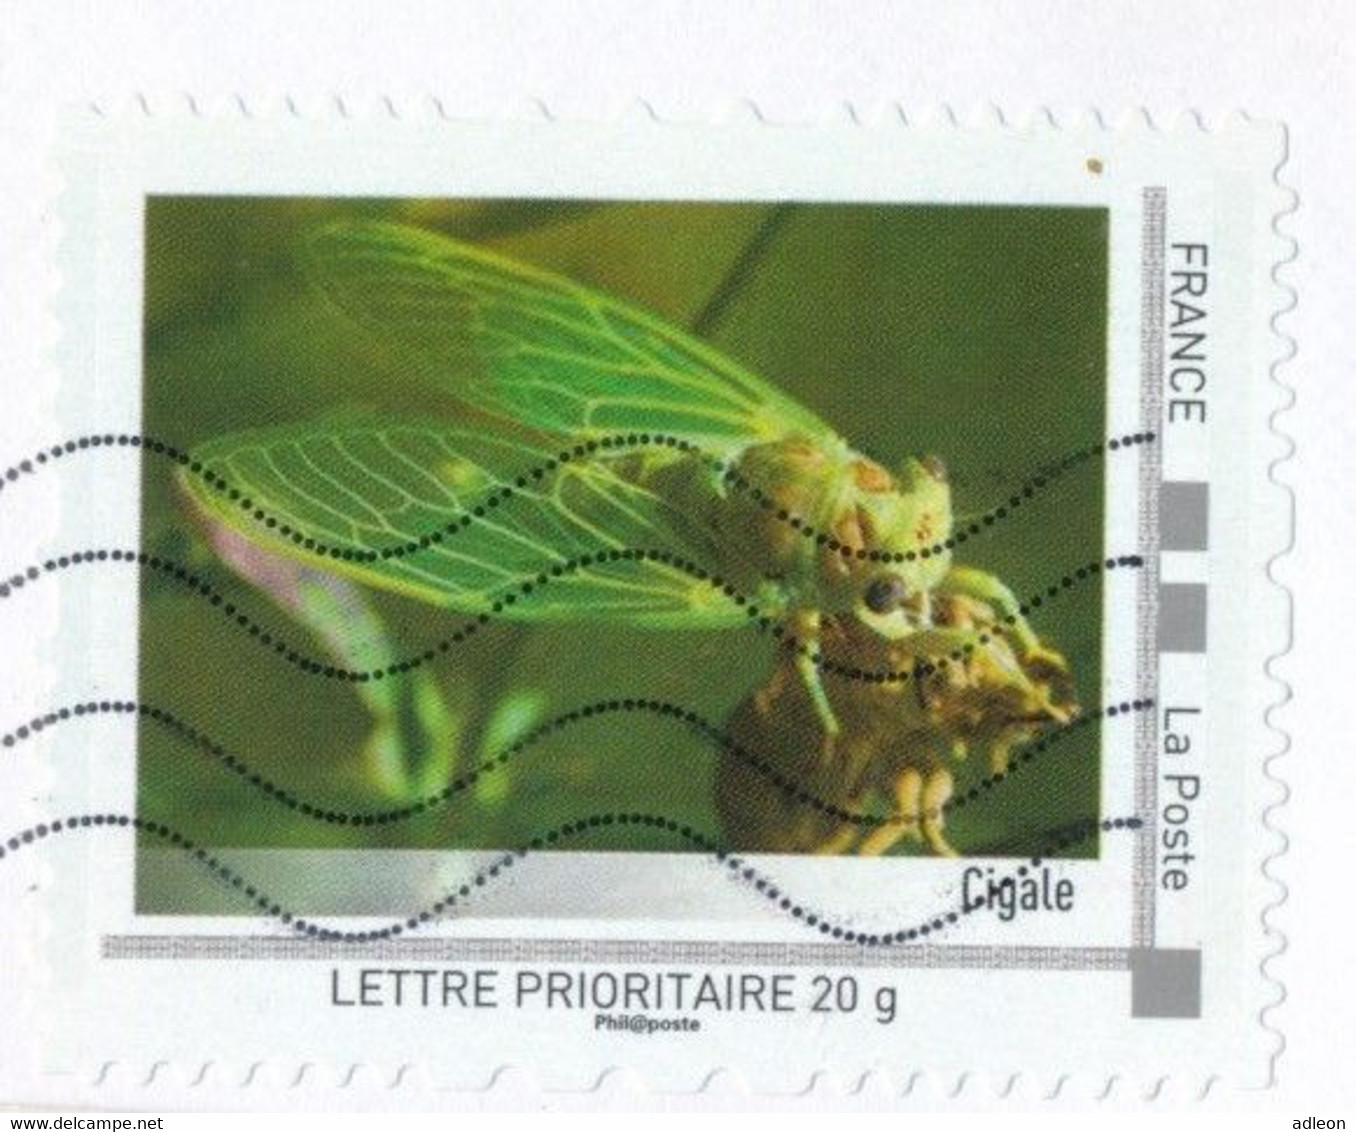 France-IDTimbres - Cigale - YT IDT 7 Sur Lettre Du 10-02-2012 - Storia Postale